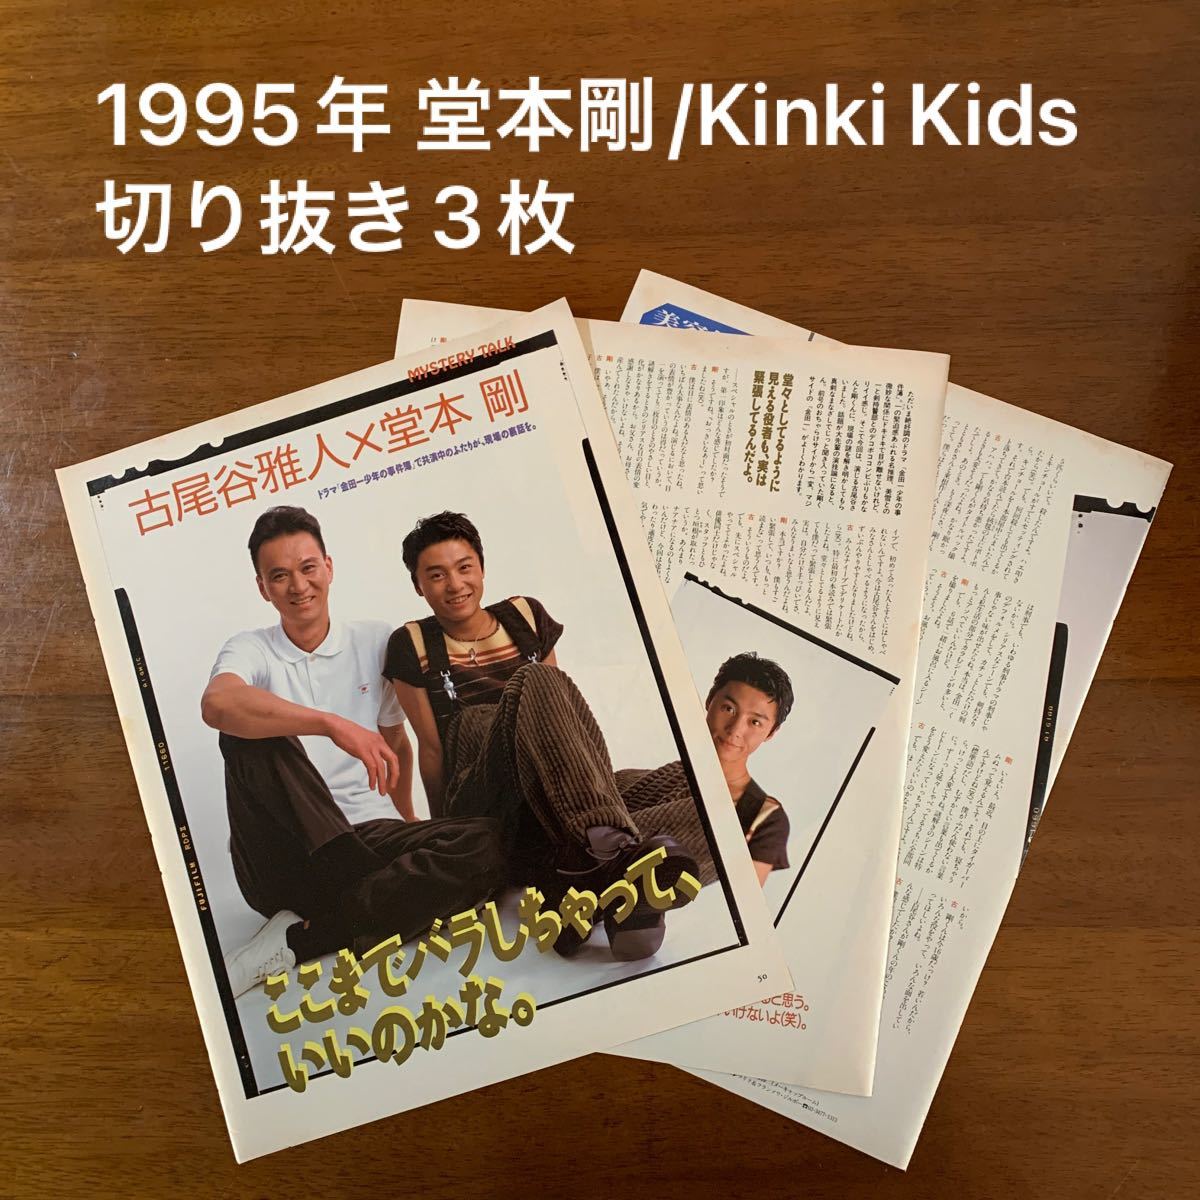 1995年 「金田一少年の事件簿」の頃の堂本剛(KinKi Kids/キンキキッズ) 切り抜き3枚